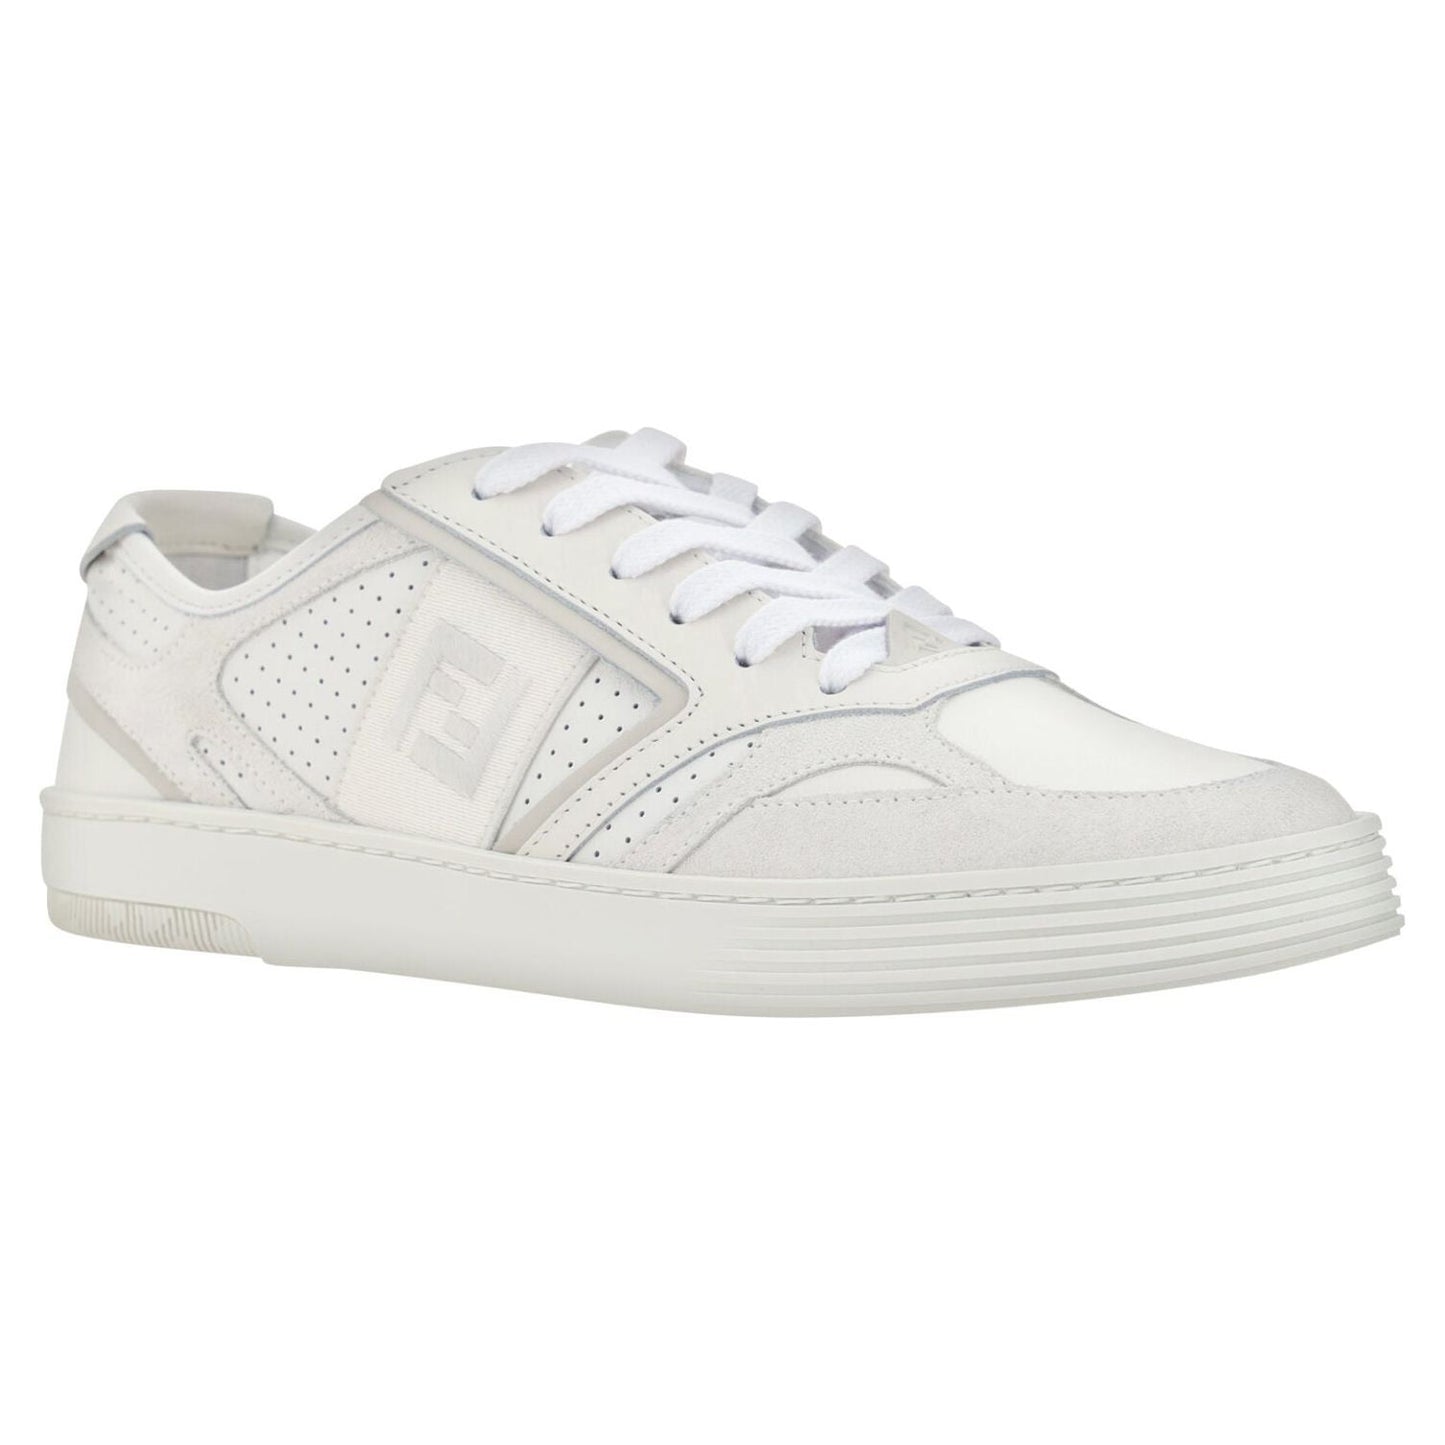 Fendi Elegant Low Top Calfskin Sneakers in White white-calf-leather-low-top-sneakers 1ADECF01-3AC7-41F8-A692-13A8A7290F34-scaled-e1914153-5ac.jpg